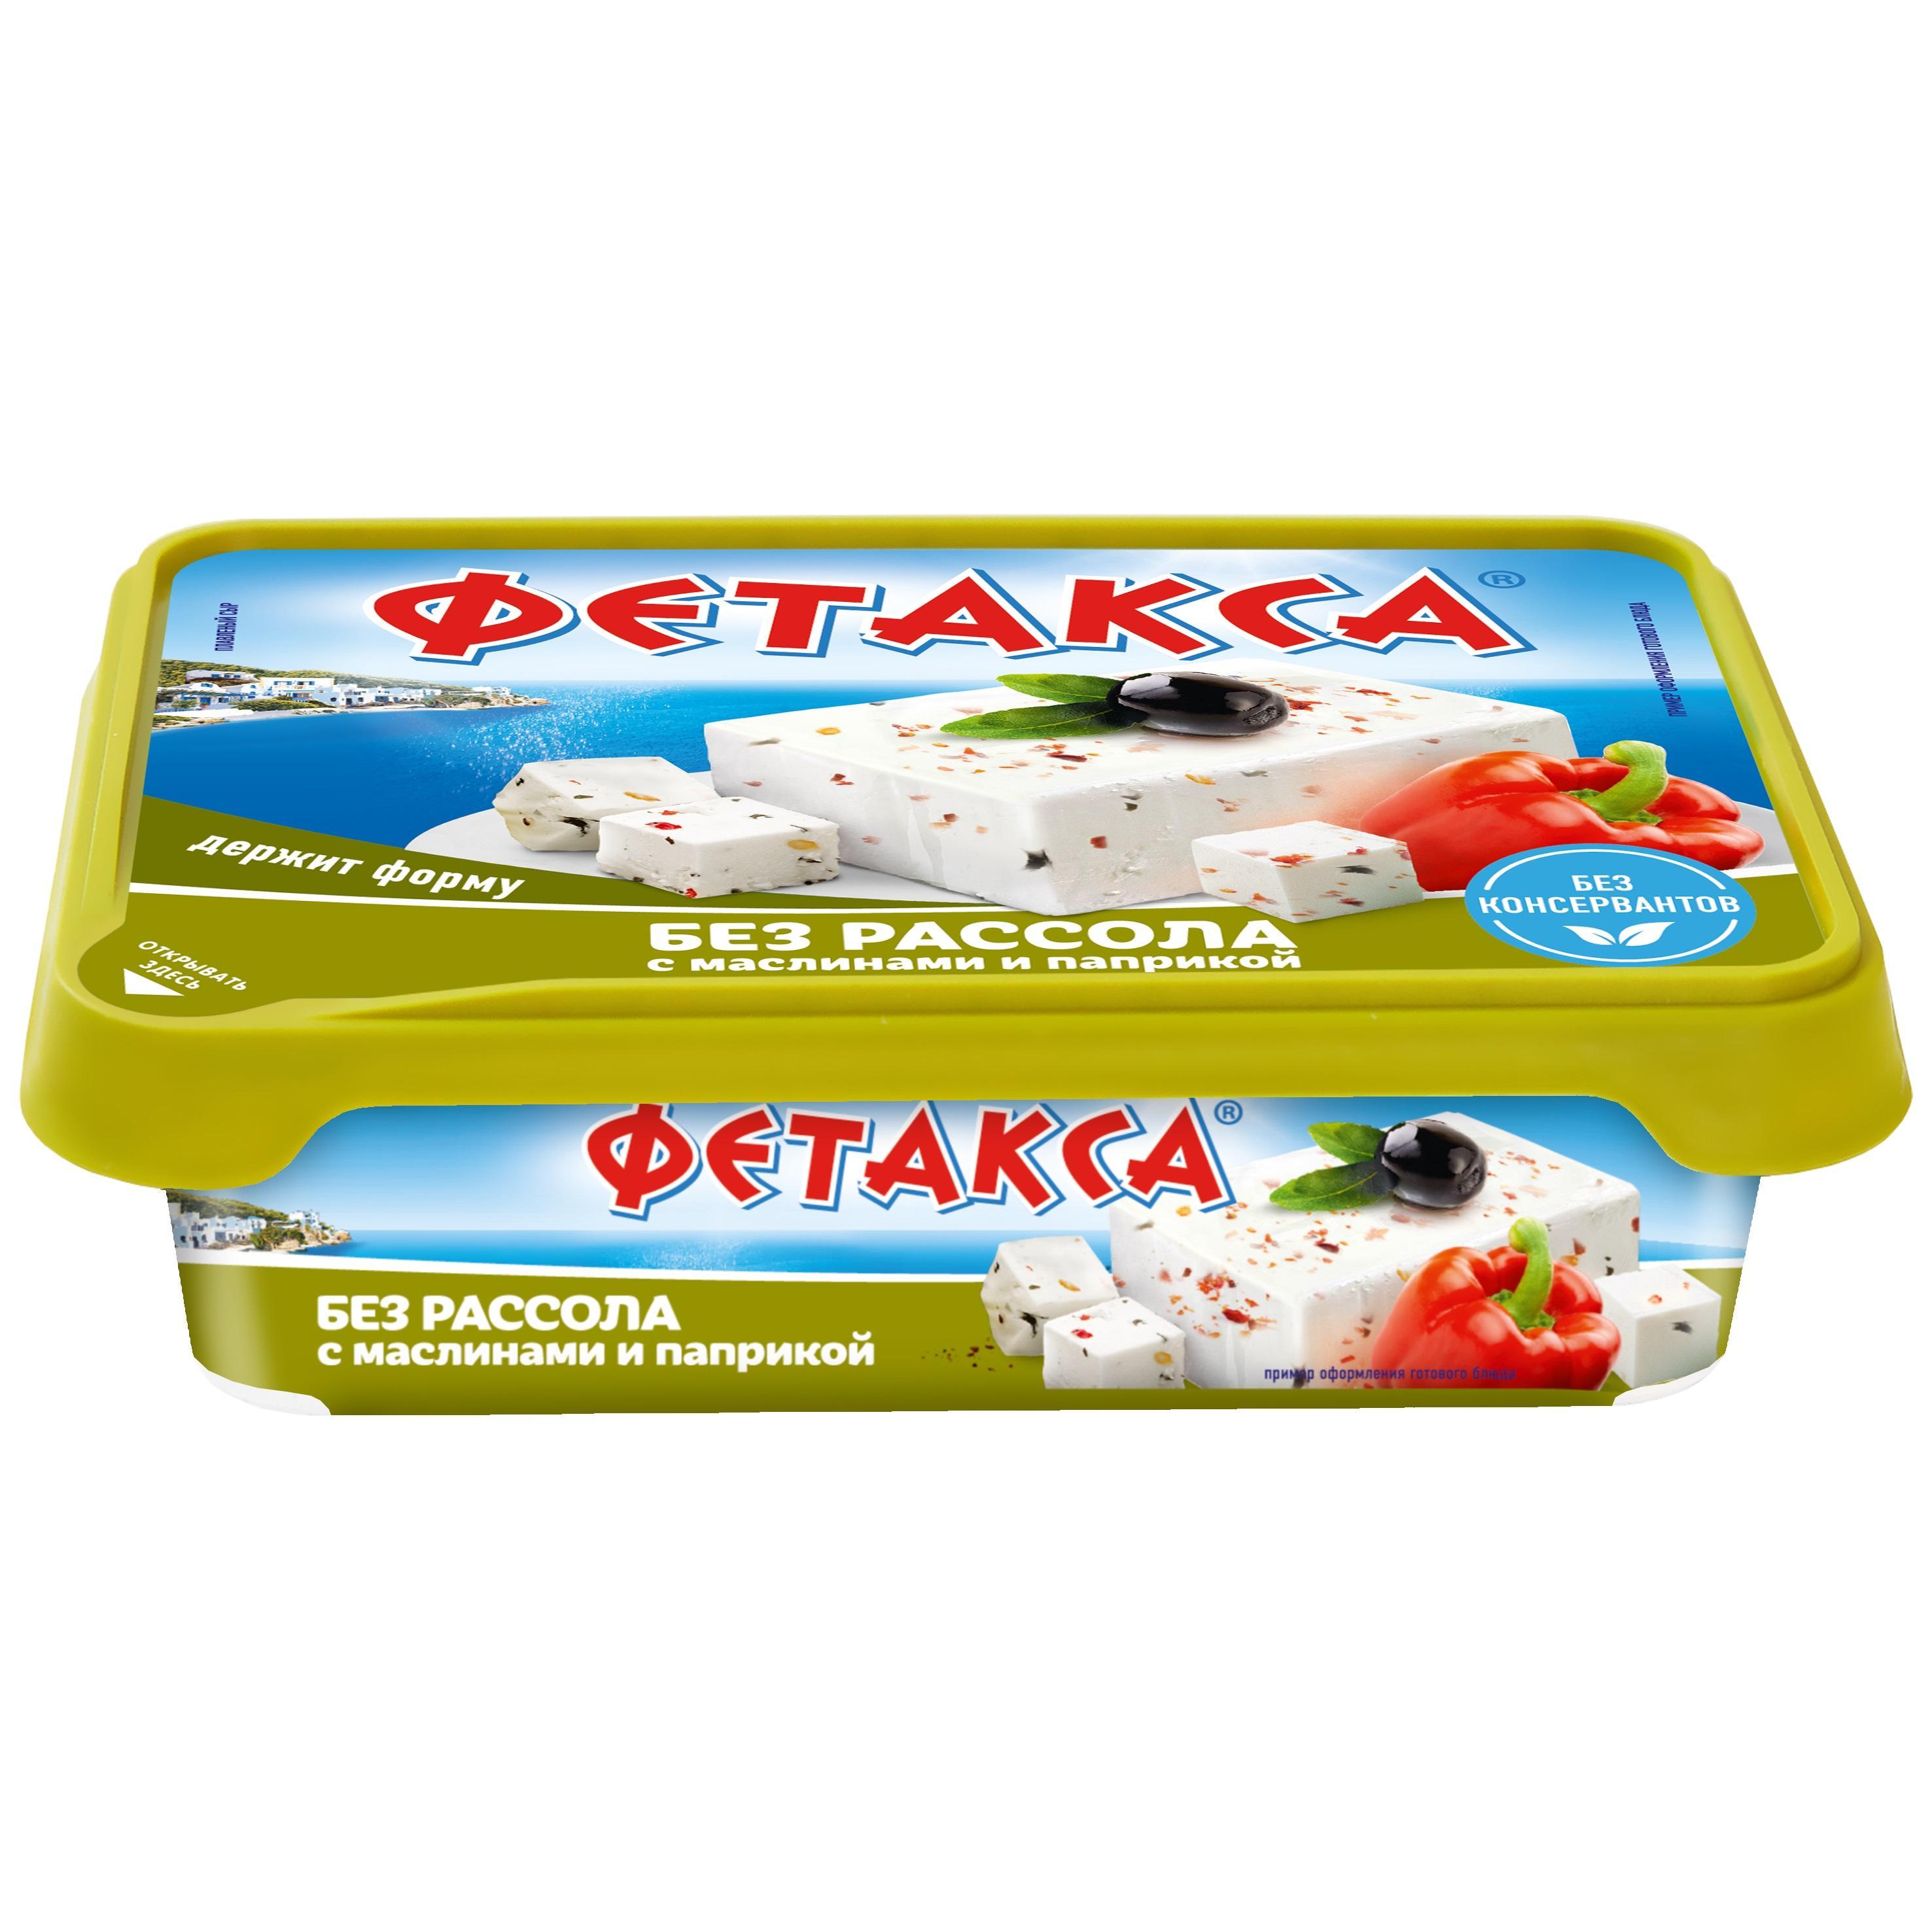 Сыр Фетакса с маслинами и паприкой, 200 гр., ПЭТ